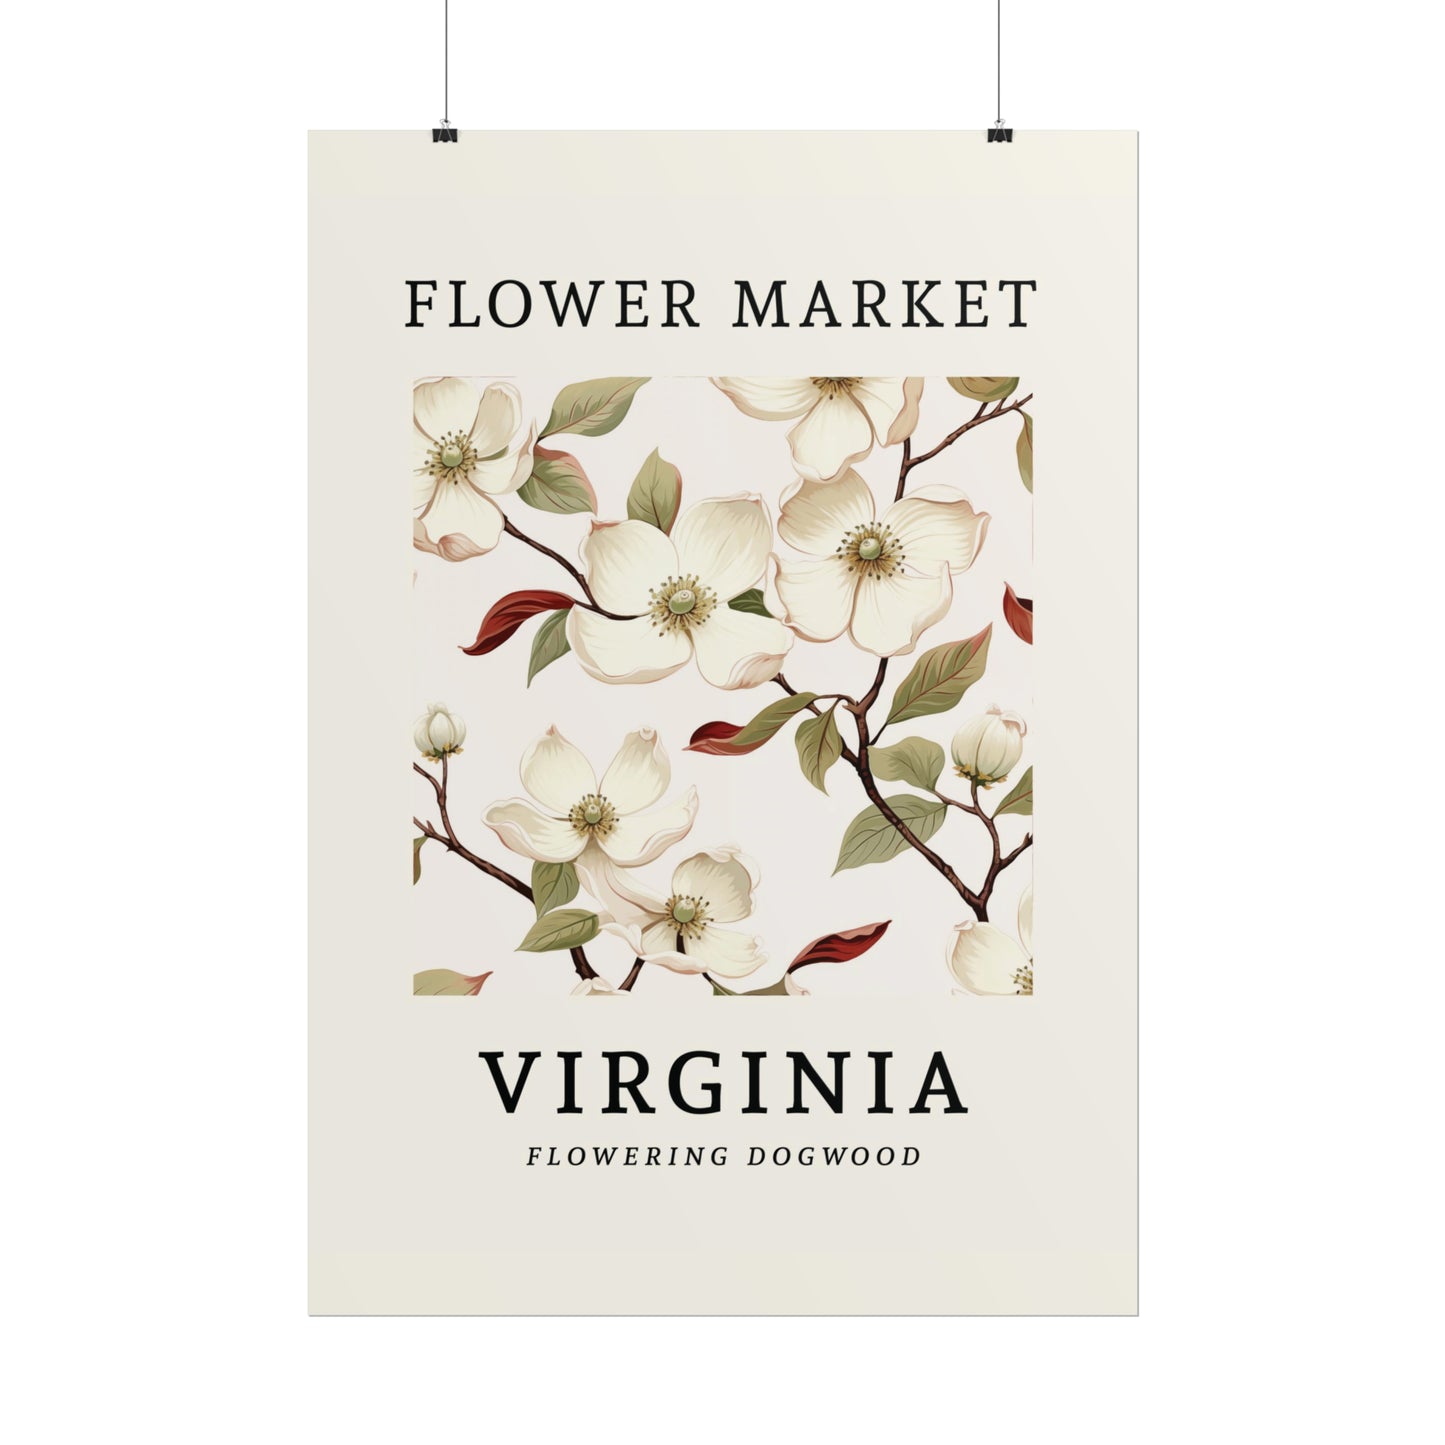 VIRGINIA FLOWER MARKET Poster Flowering Dogwood State Flower Print